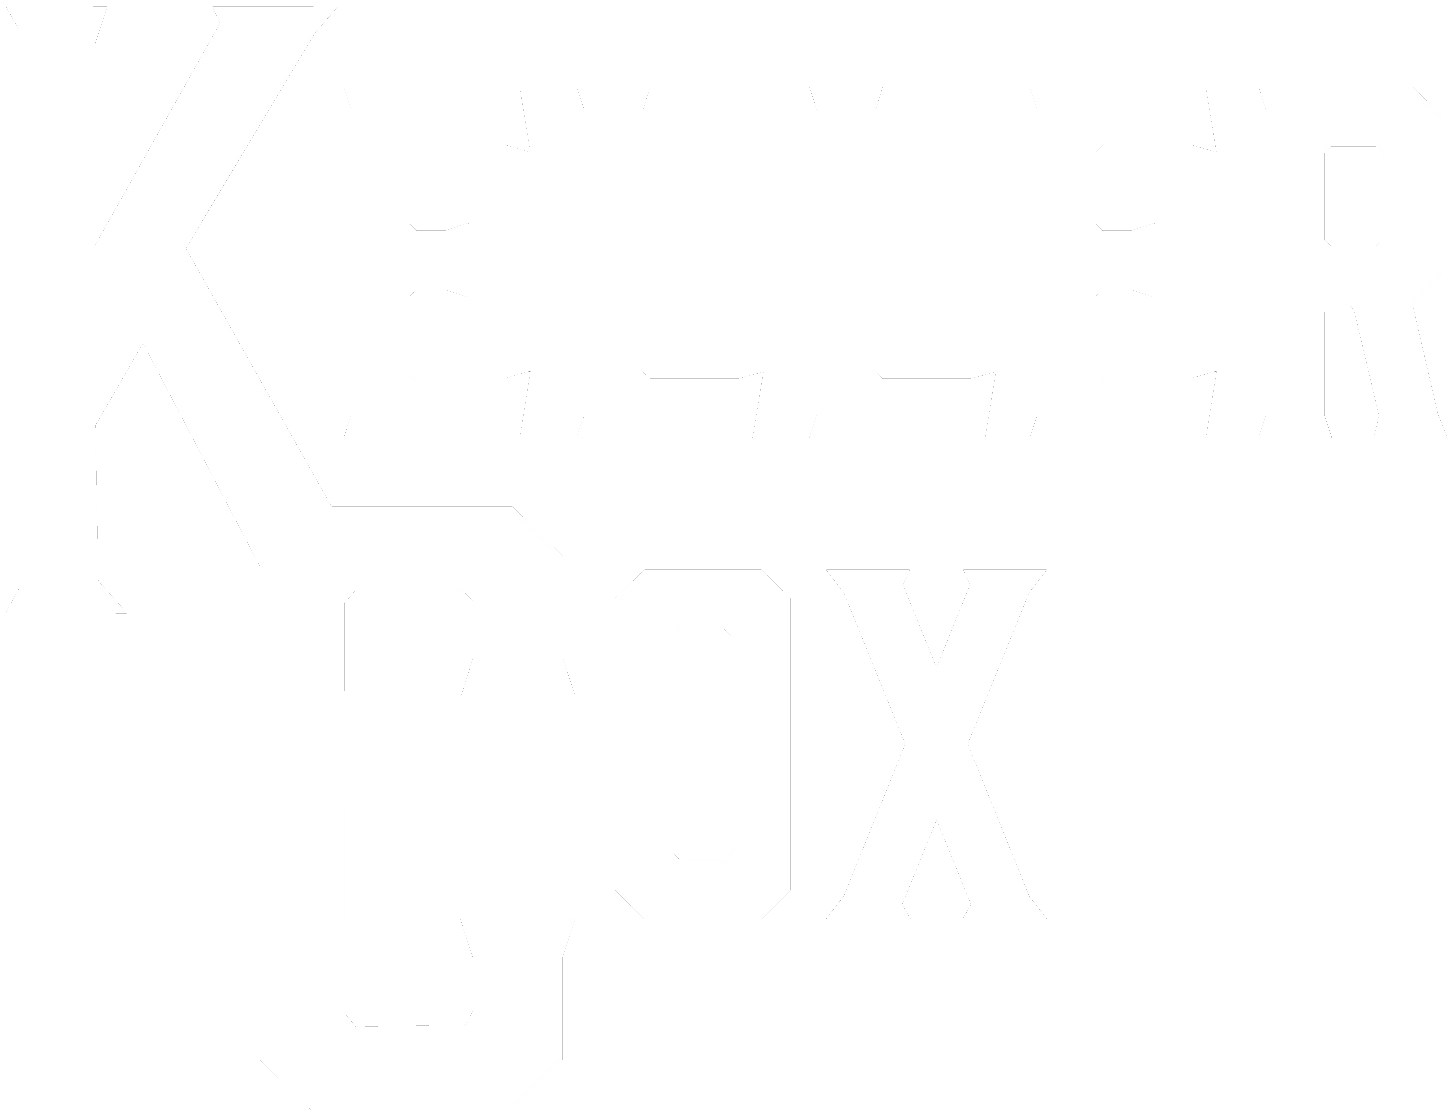 Keller Cox